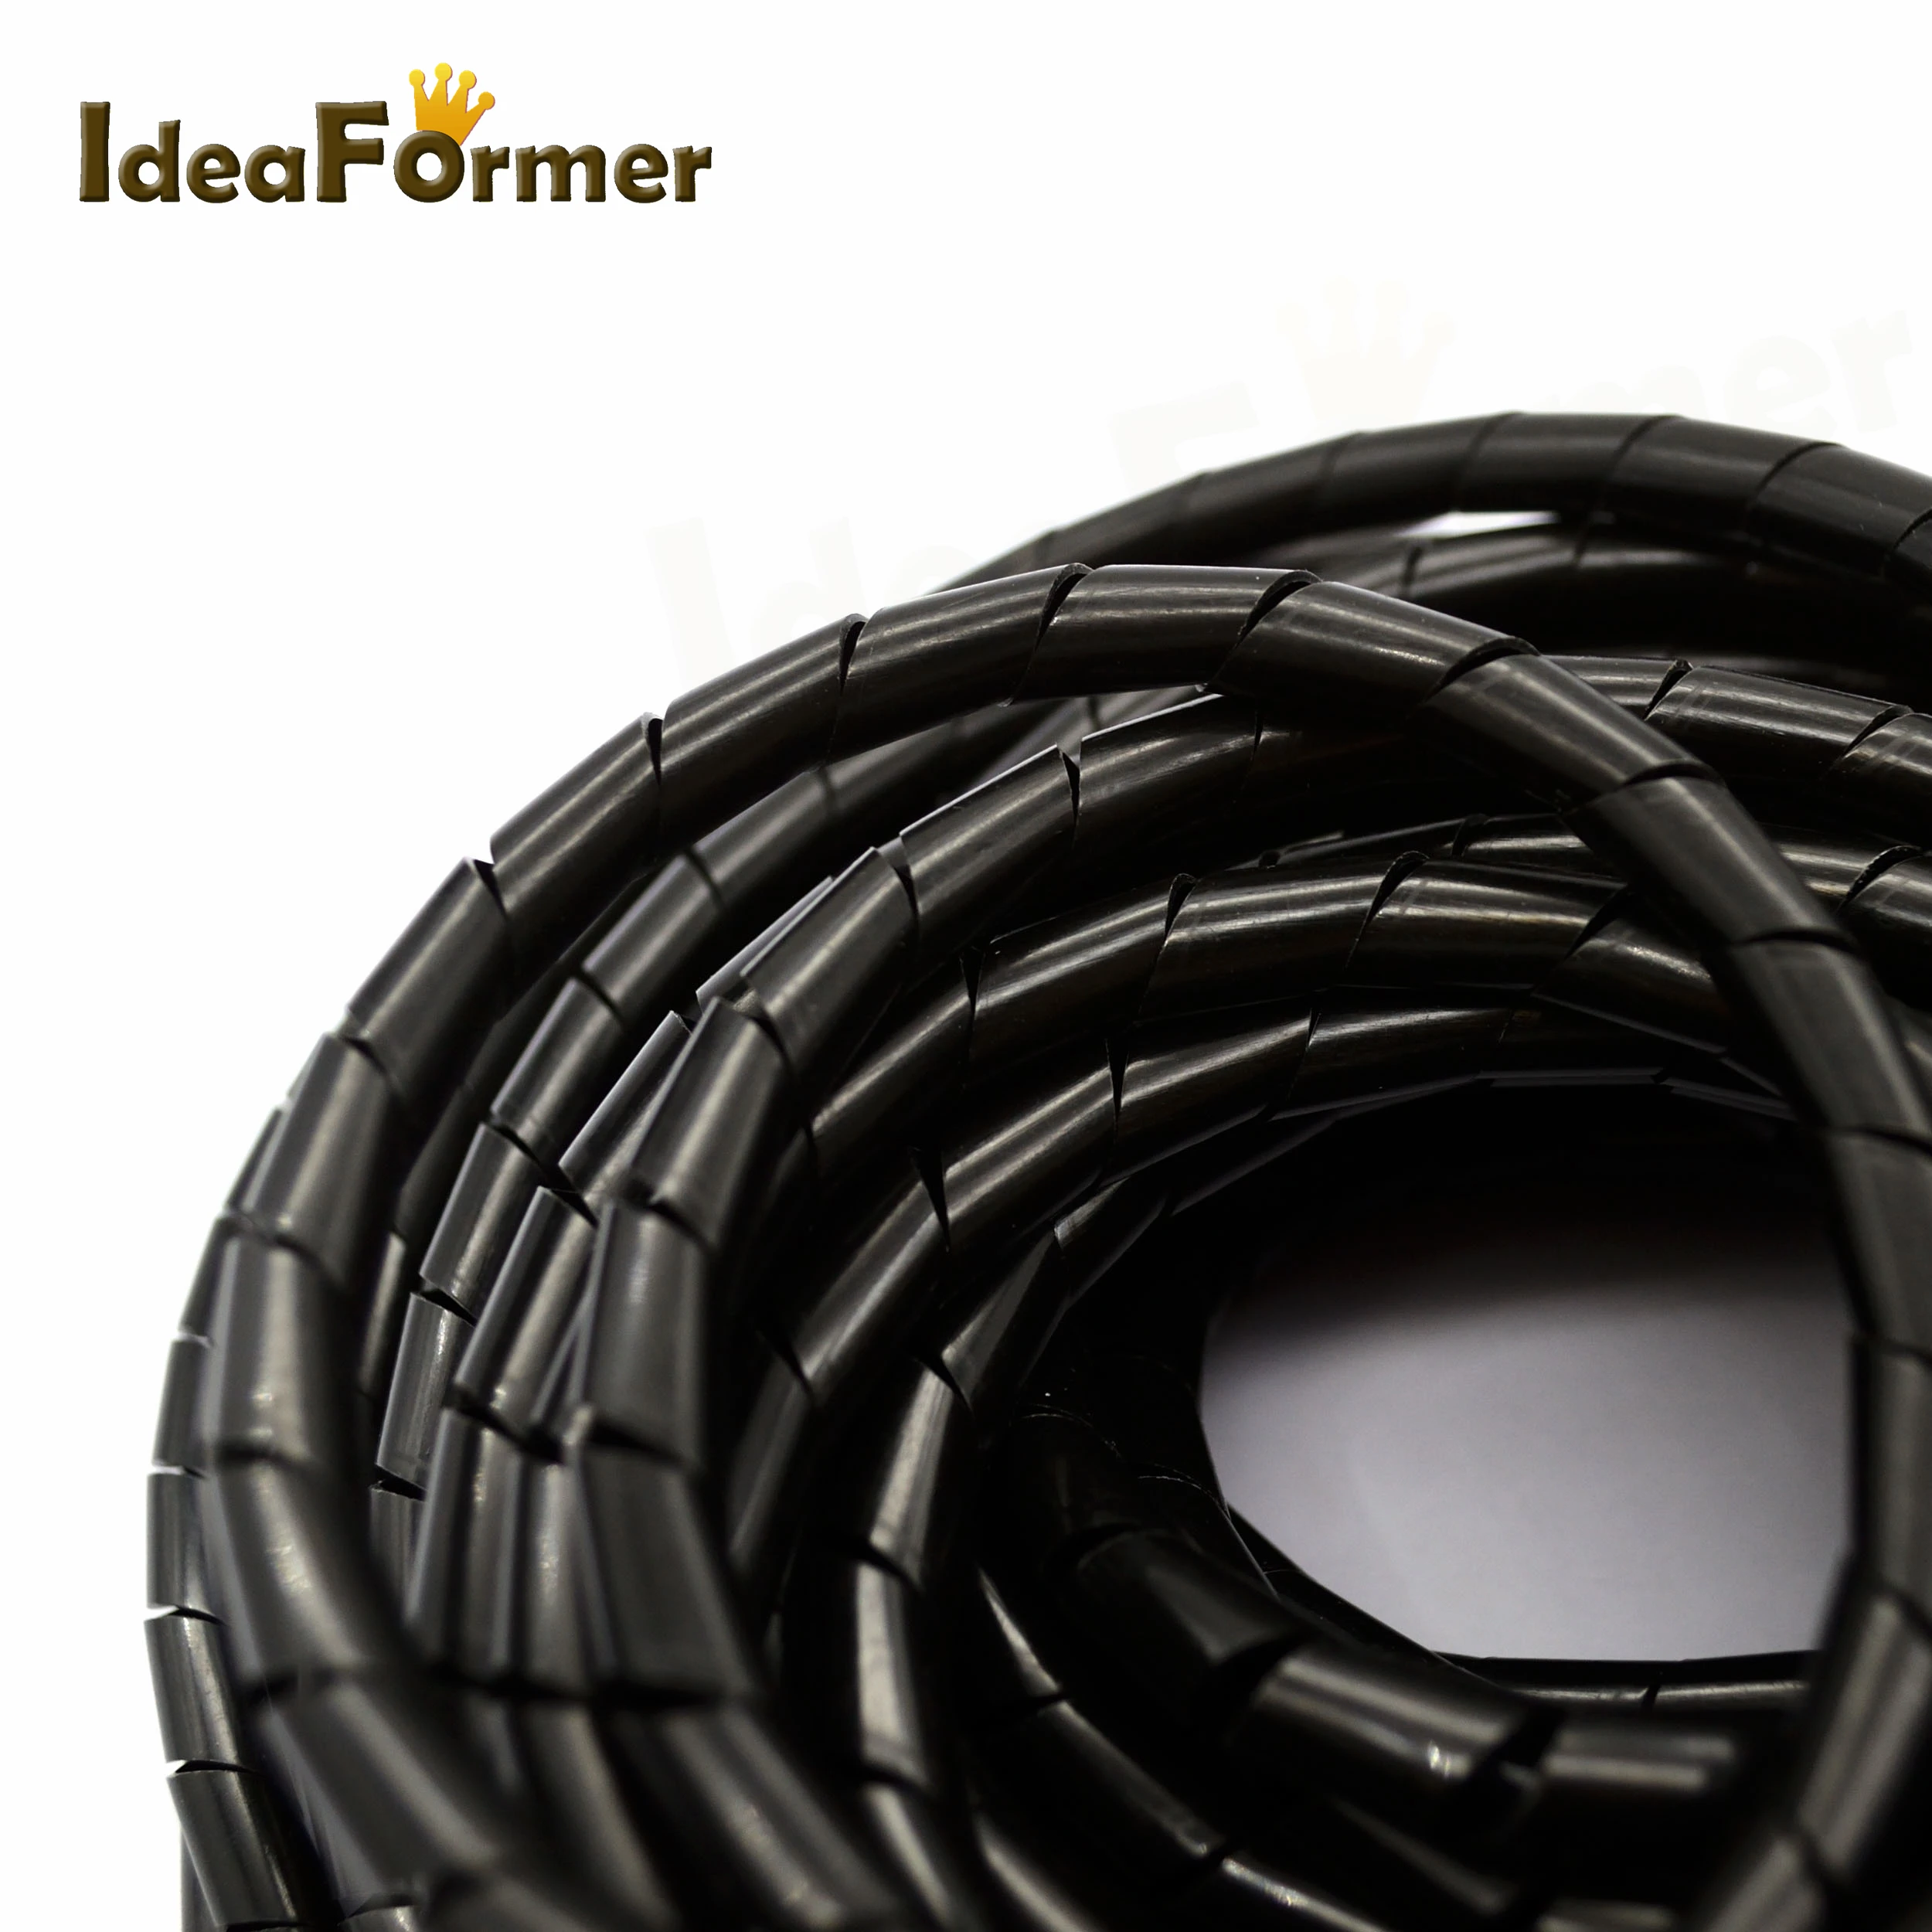 Шланг со спиральной оплеткой кабель провода обмотки трубки диаметр 8 мм 13 метров часть PE Управление шнур черный для 3D-принтеров запчасти